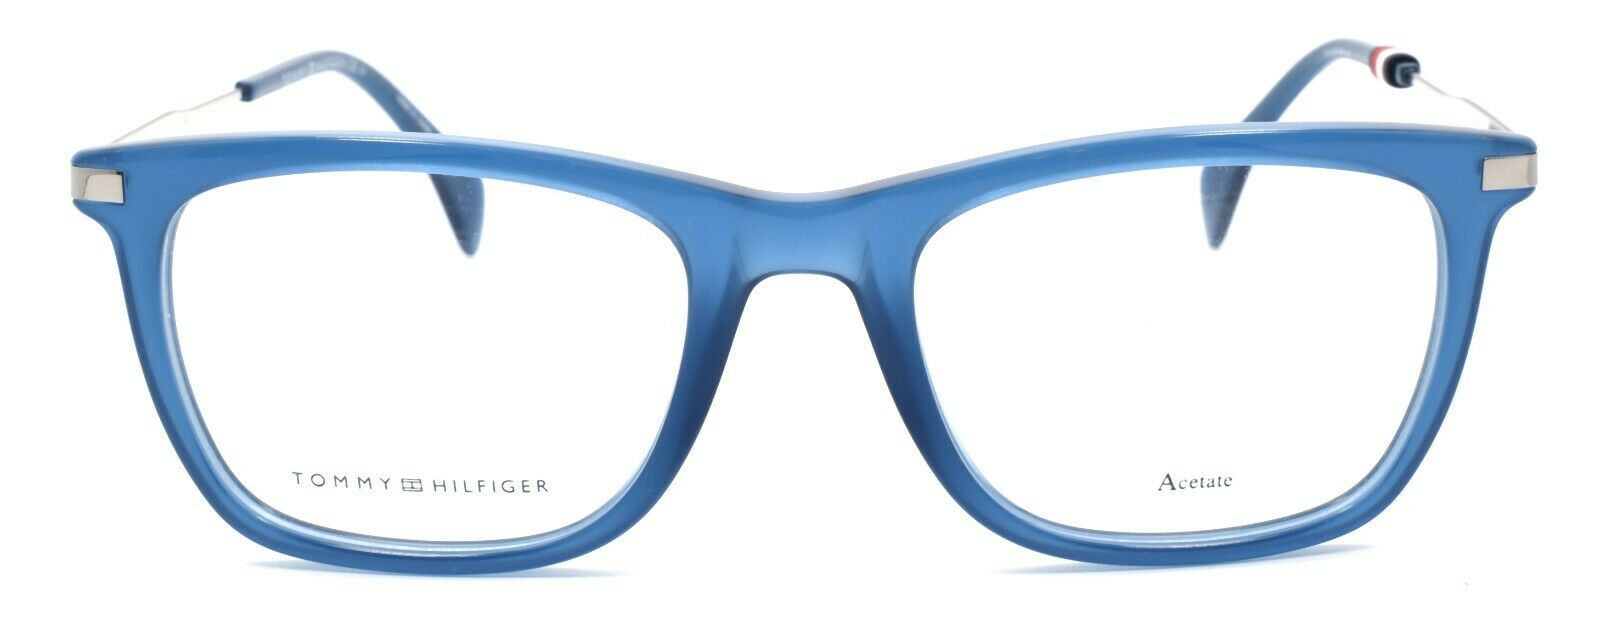 2-TOMMY HILFIGER TH 1472 PJP Men's Eyeglasses Frames 51-20-145 Blue + CASE-762753613424-IKSpecs